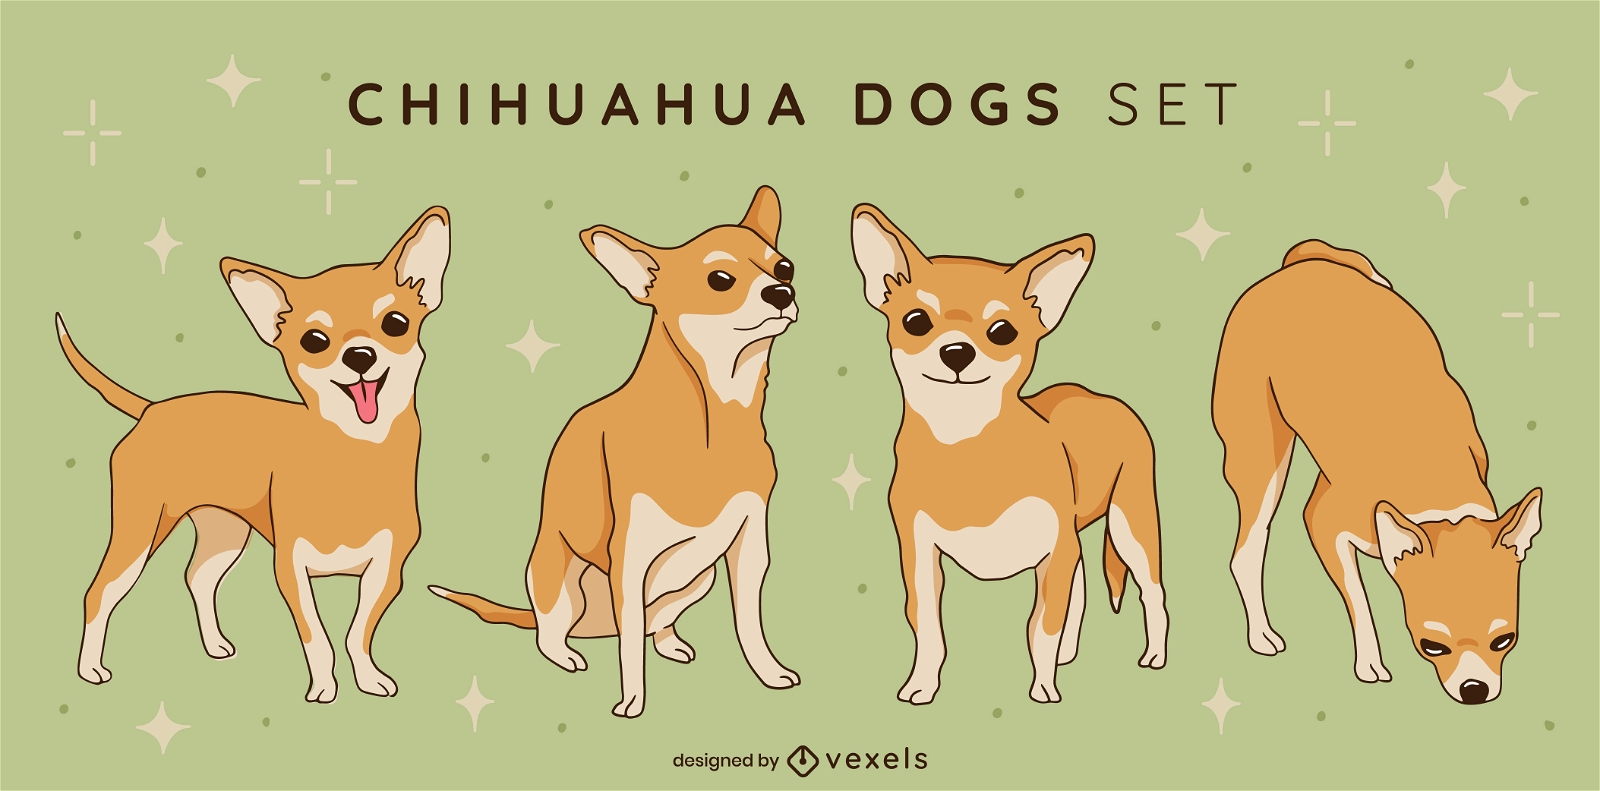 Cenografia de cães Chihuahua